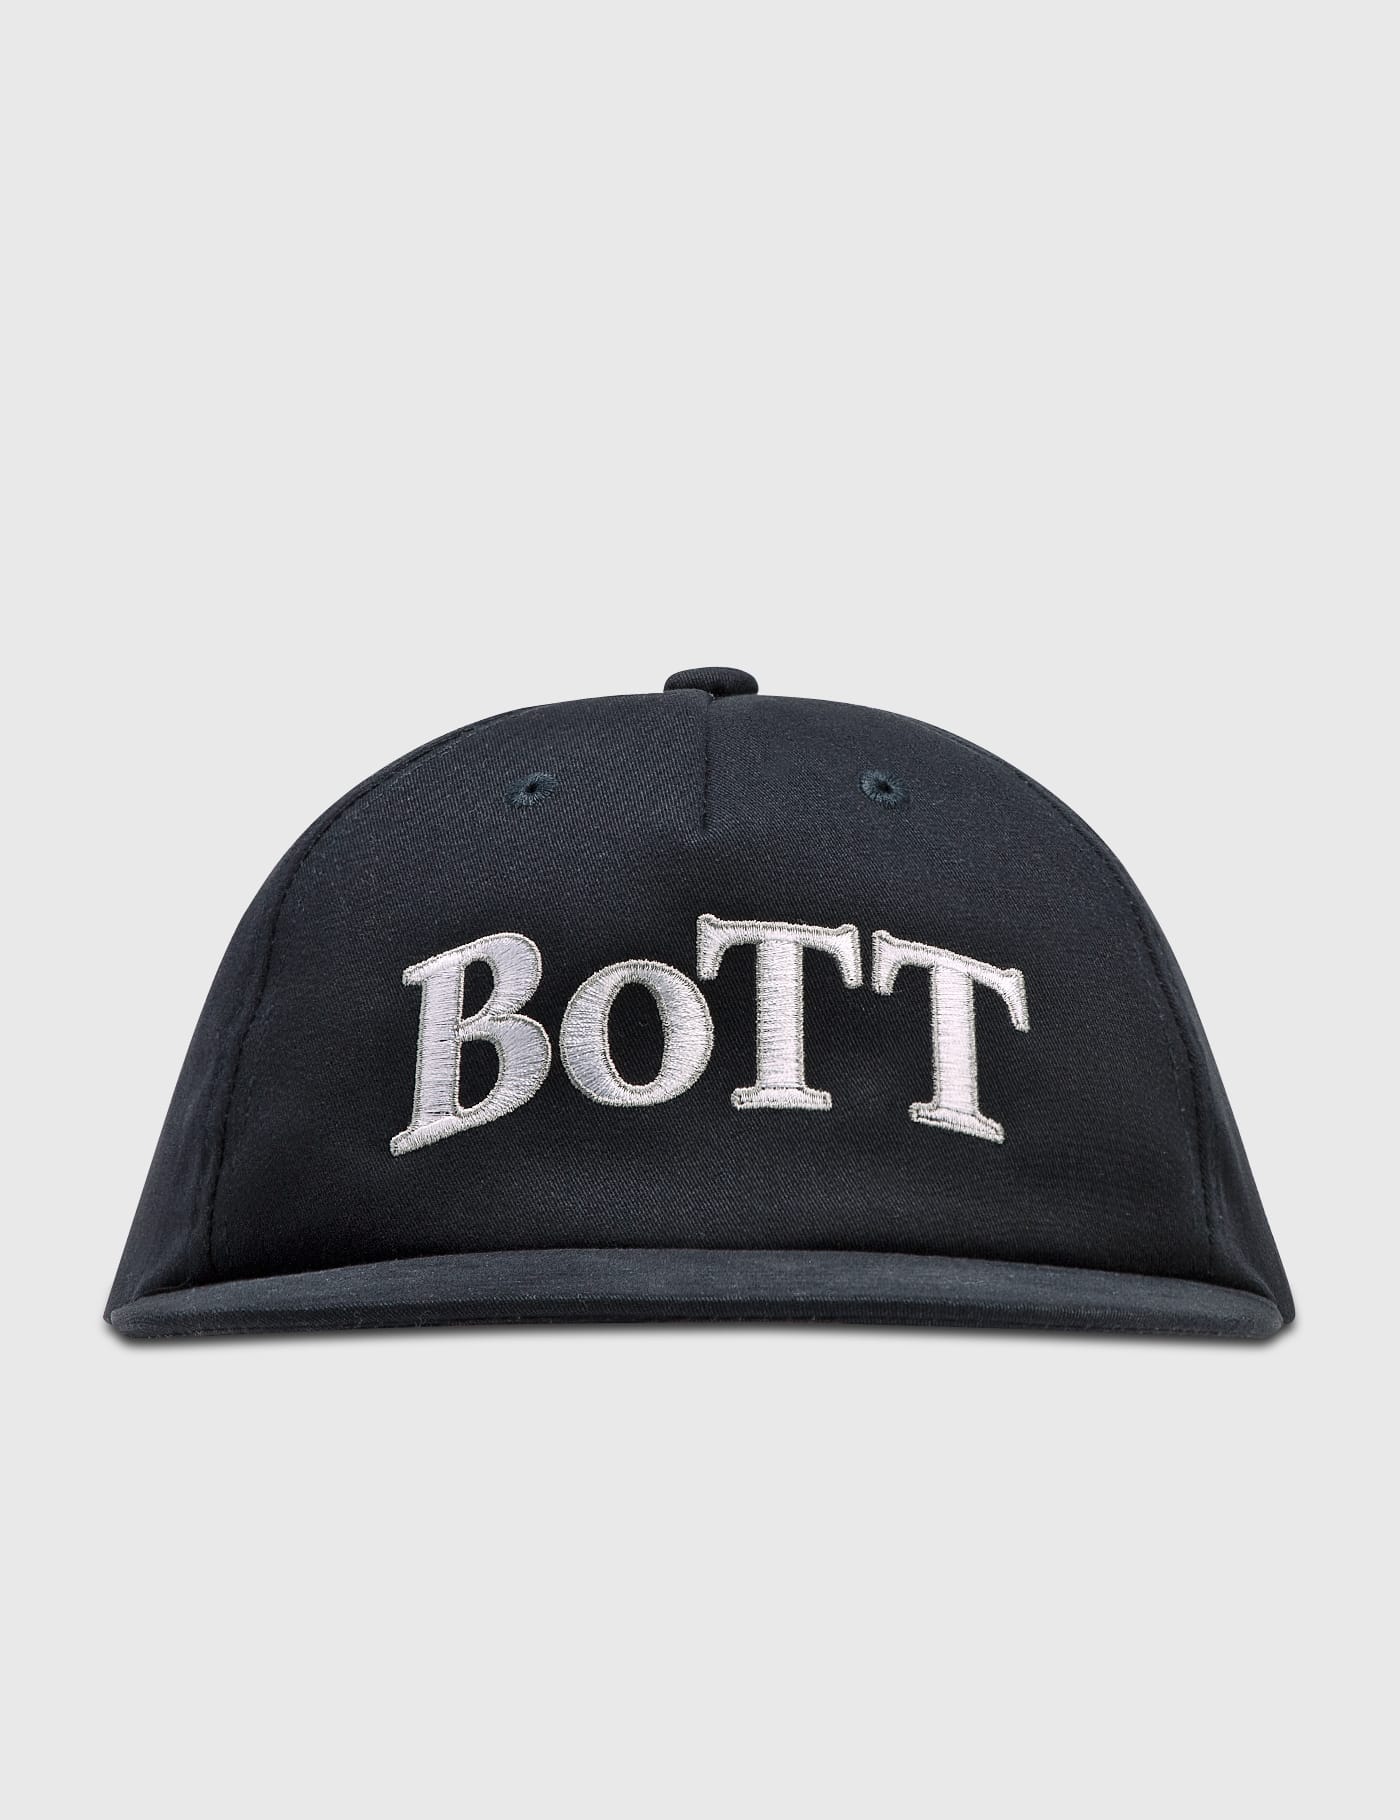 BoTT - OG ロゴ 5 パネル キャップ | HBX - ハイプビースト(Hypebeast